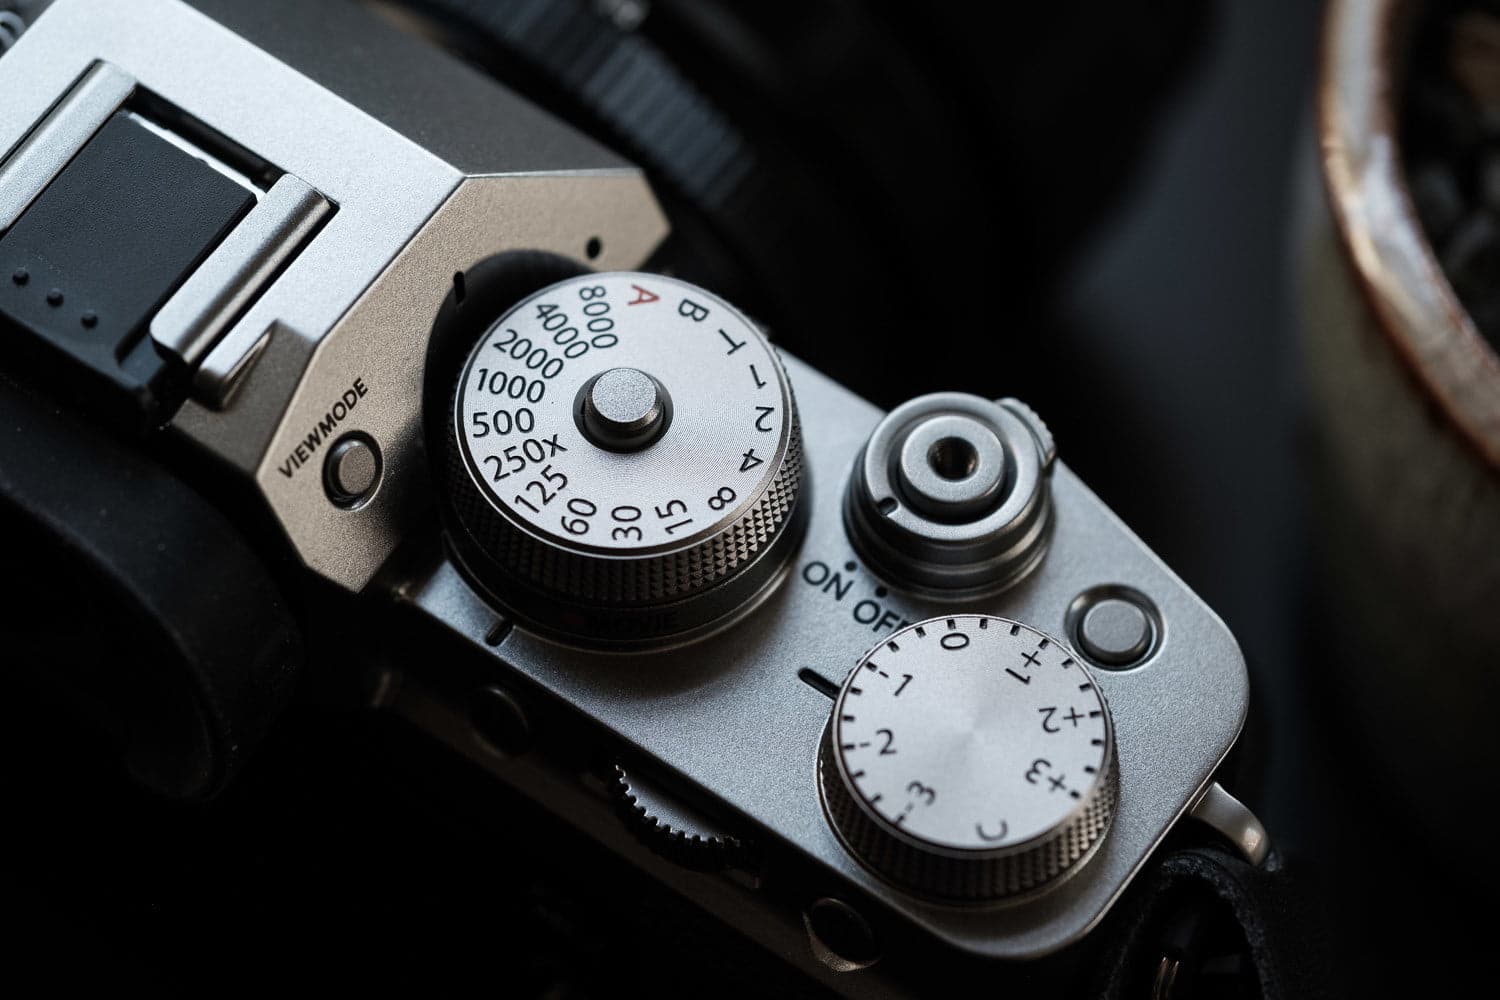 Lựa chọn máy ảnh Fujifilm X-T4 trong năm 2022 có còn hấp dẫn hay không?